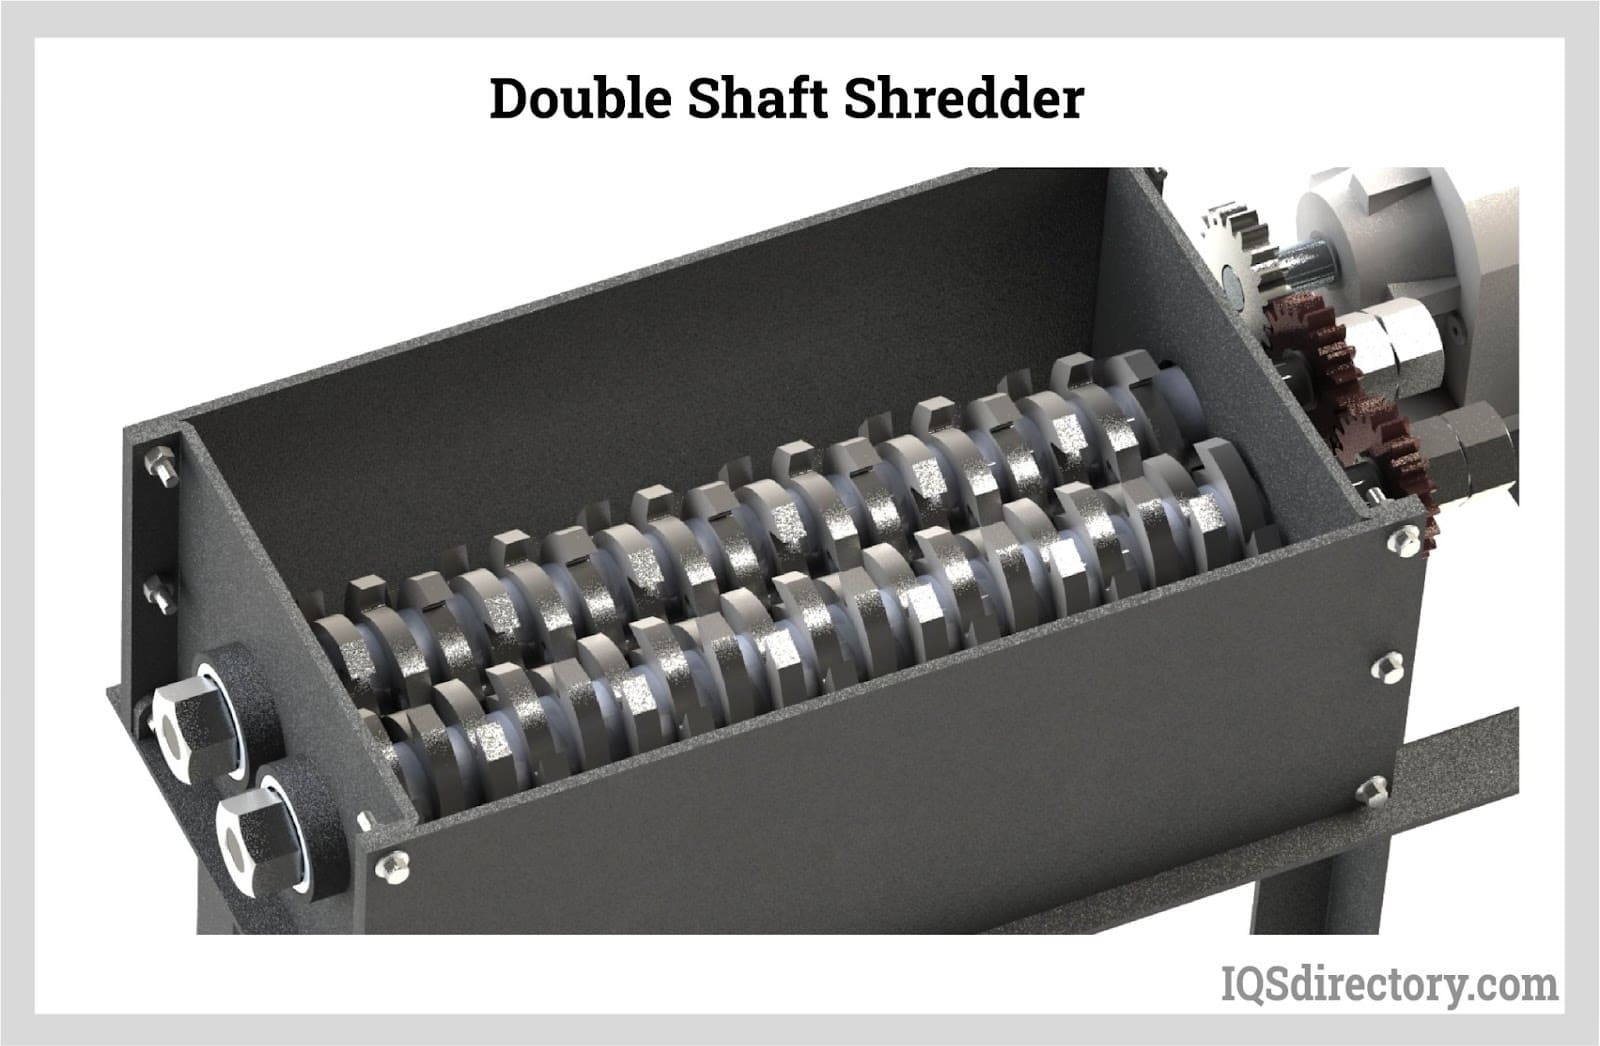 https://www.iqsdirectory.com/articles/shredder/metal-shredders/double-shaft-shredder.jpg